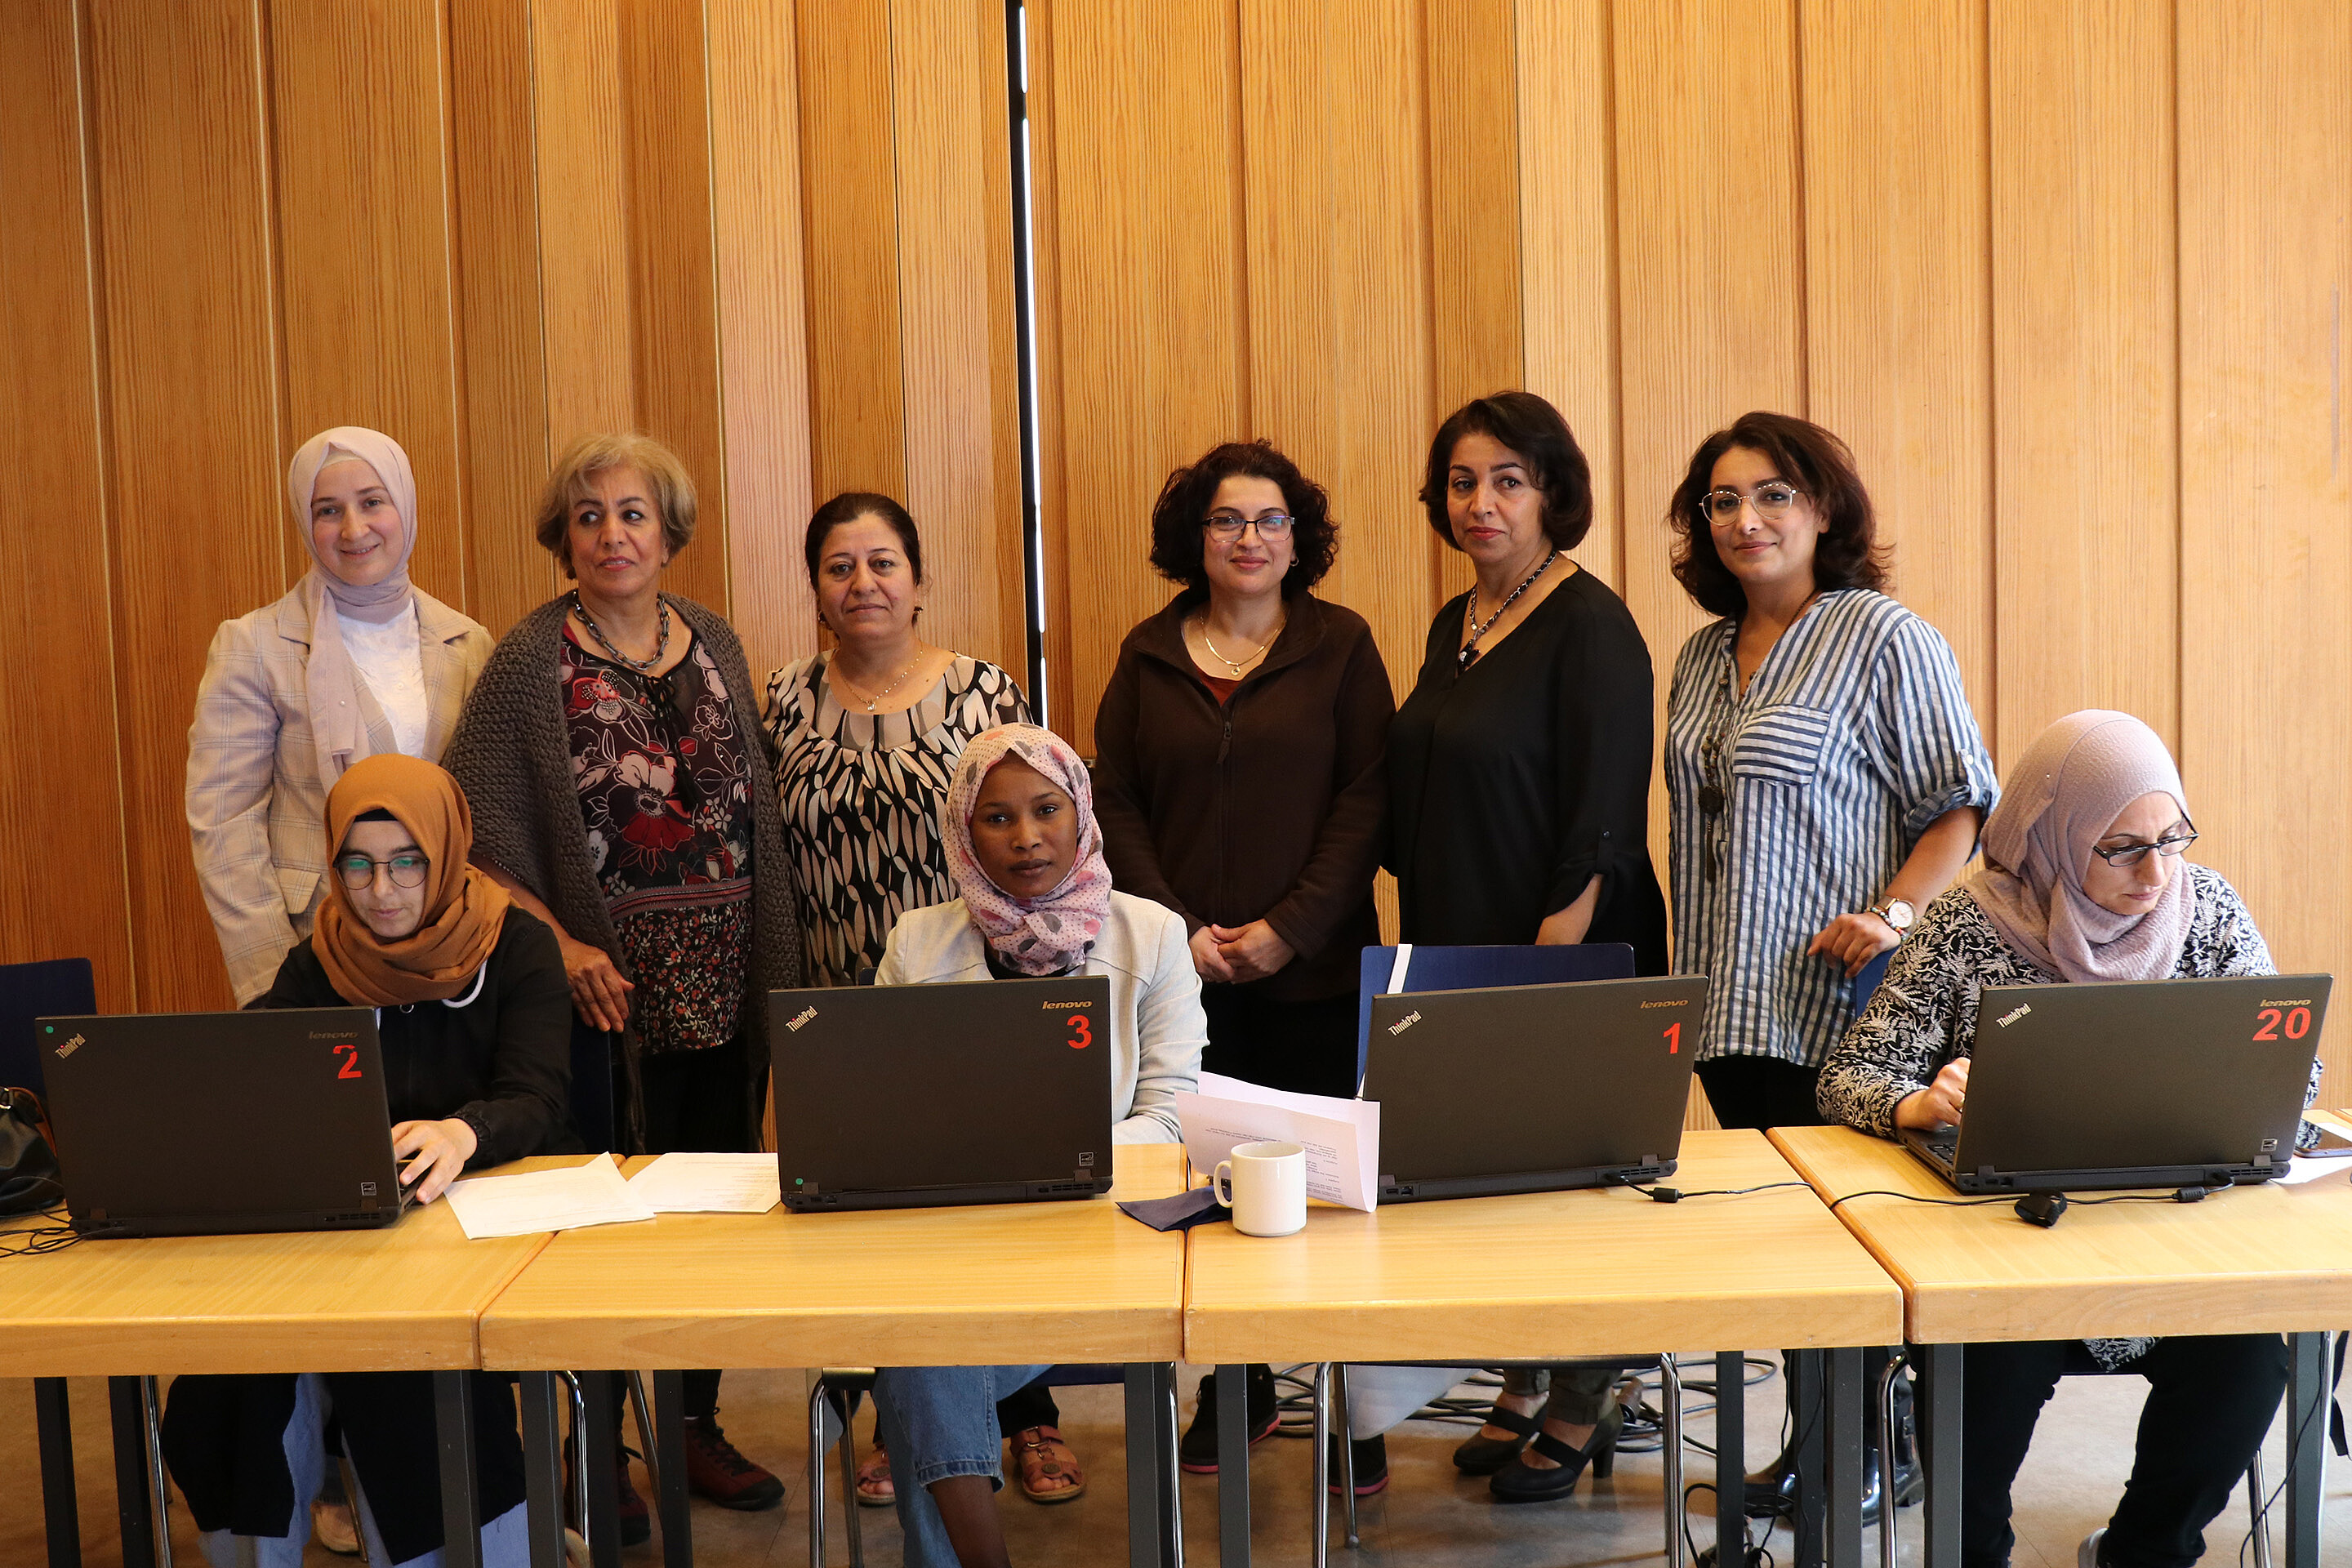 Gruppenfoto von neun Frauen mit PCs: Die Teilnehmerinnen des PC-Cafés hatten selbst die Anregung gegeben, einen solchen Kurs ins Leben zu rufen. Inzwischen finden vier Treffen pro Woche statt.